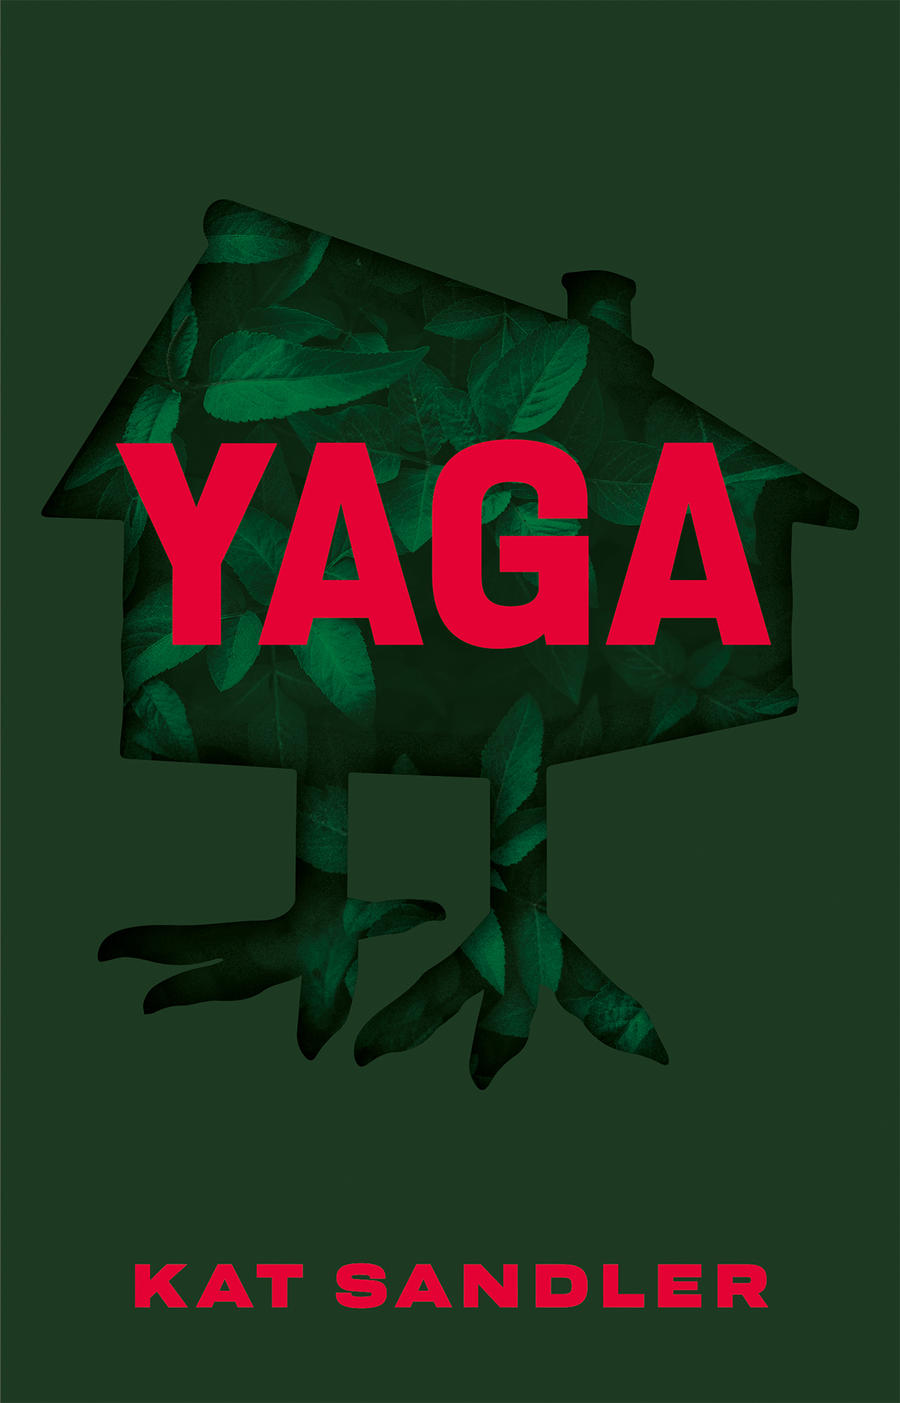 YAGA + - 2020